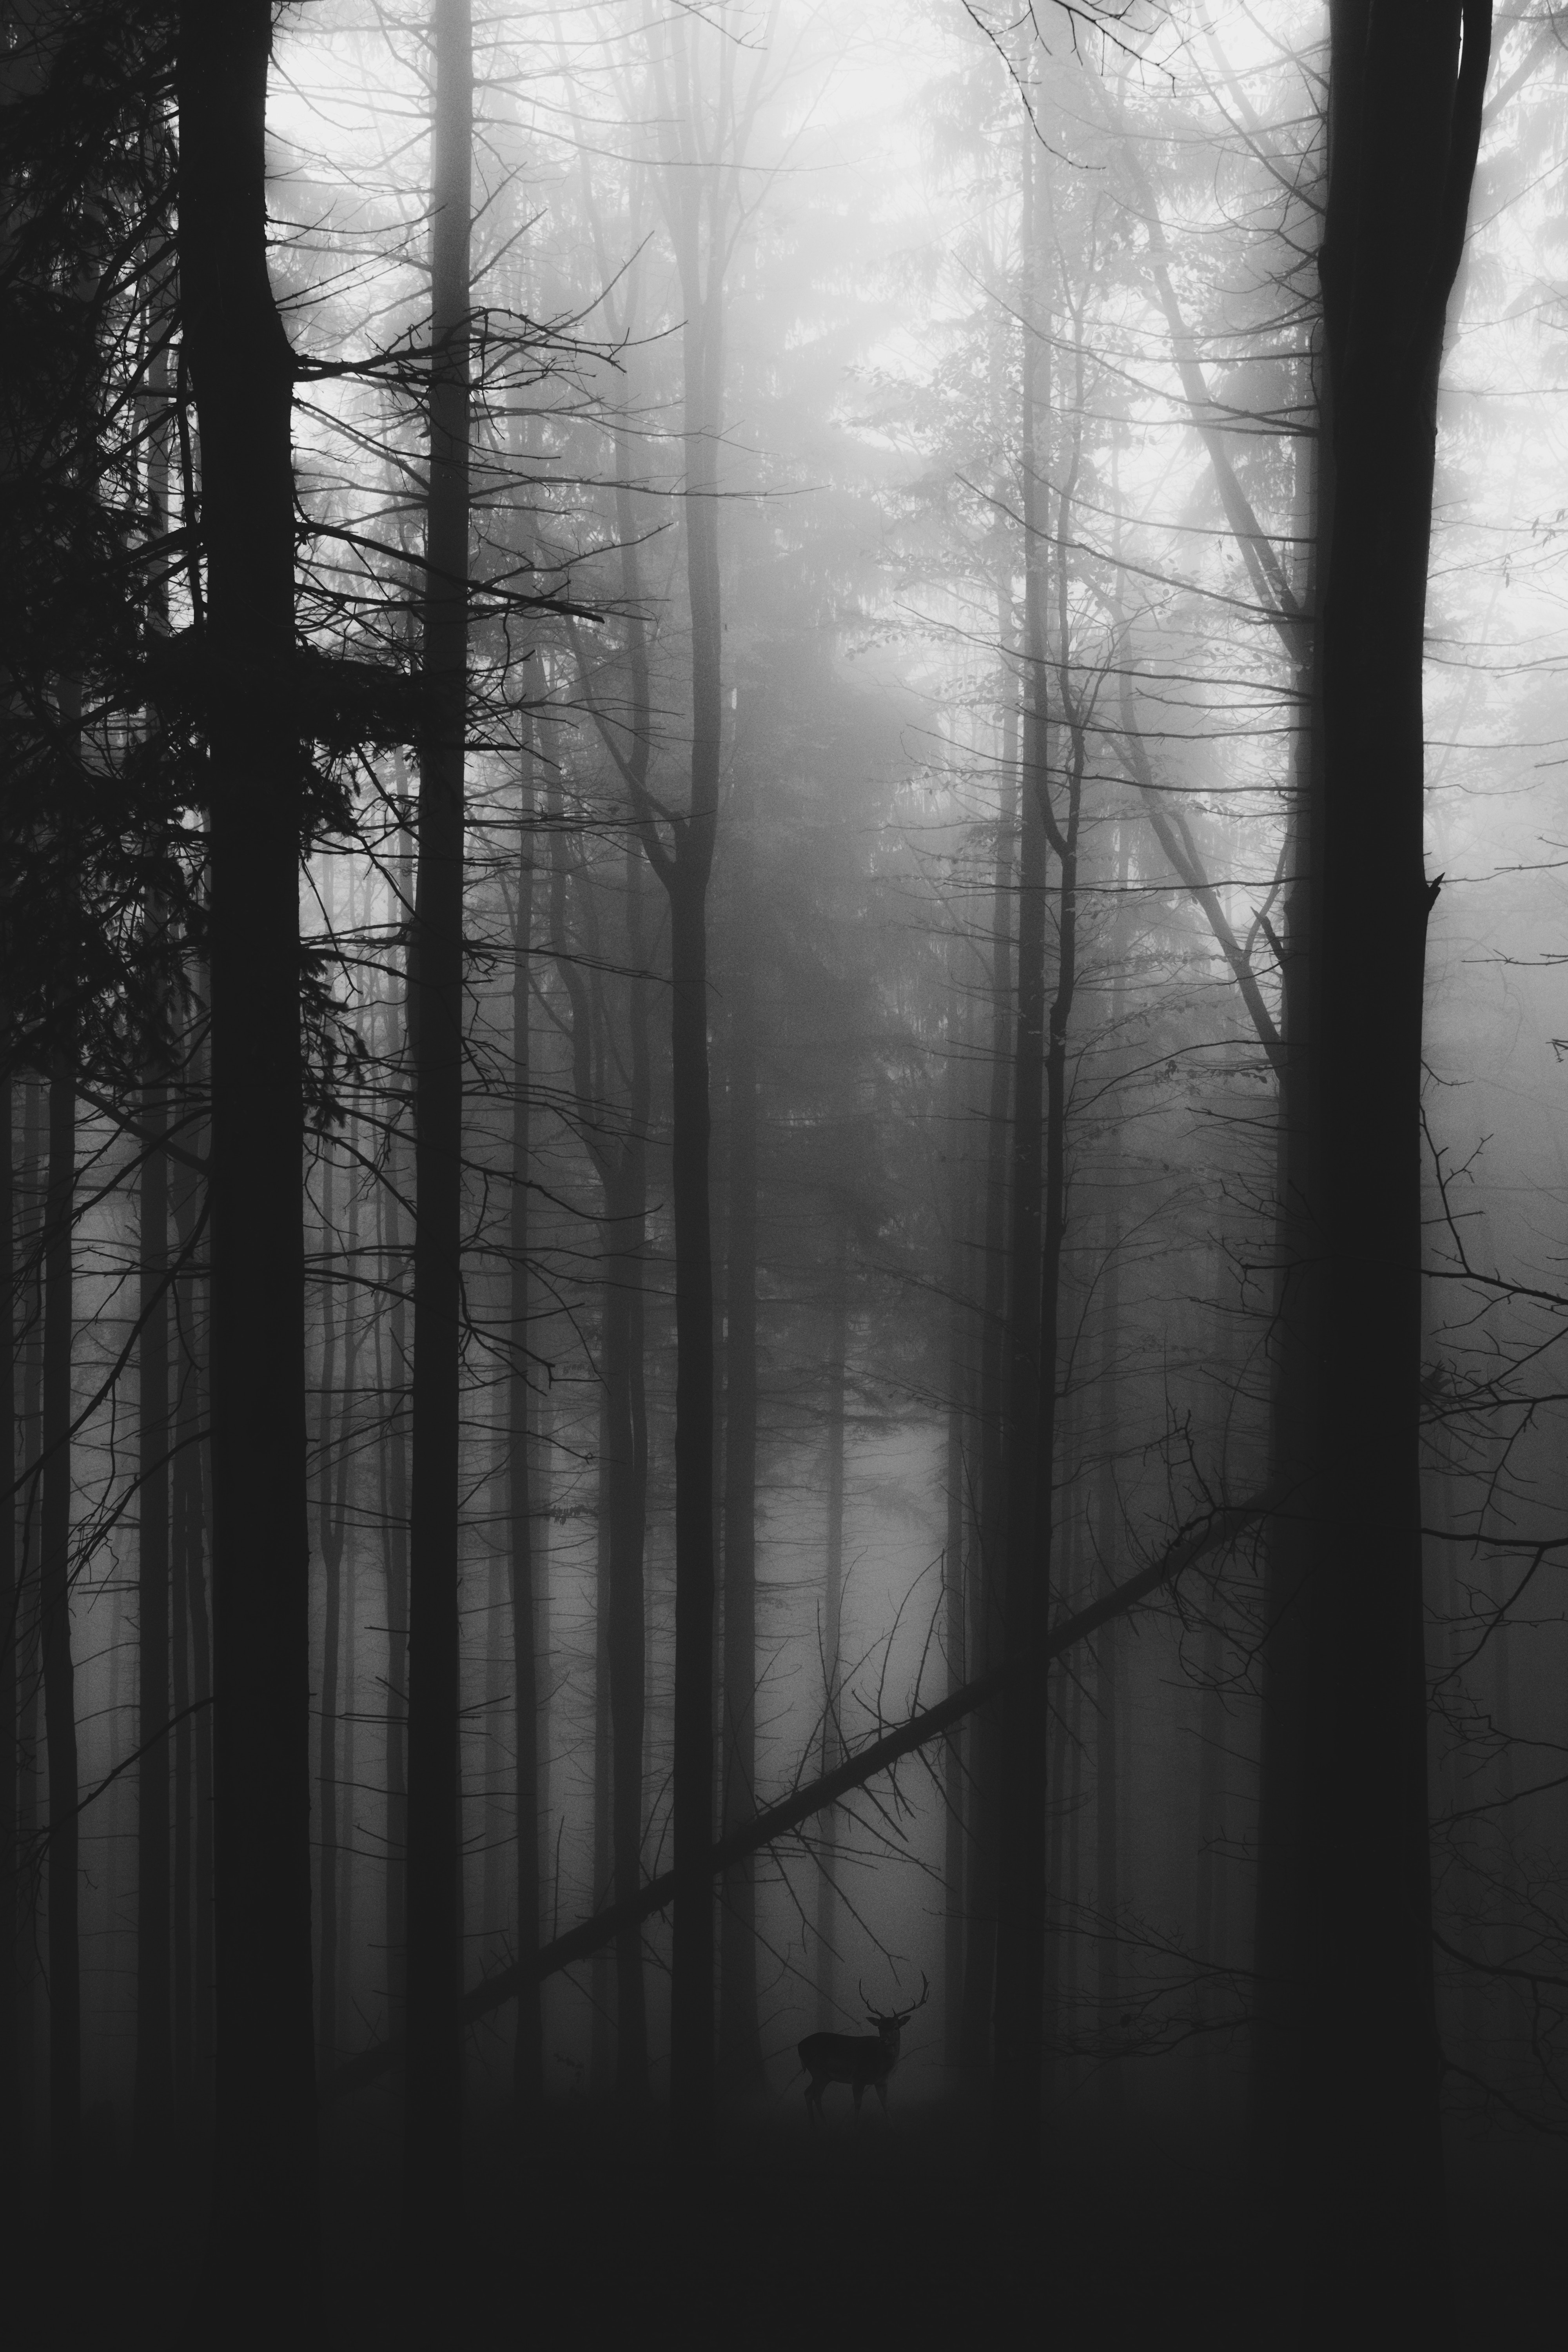 black, fog, deer, gloomy, bw, forest, chb cellphone